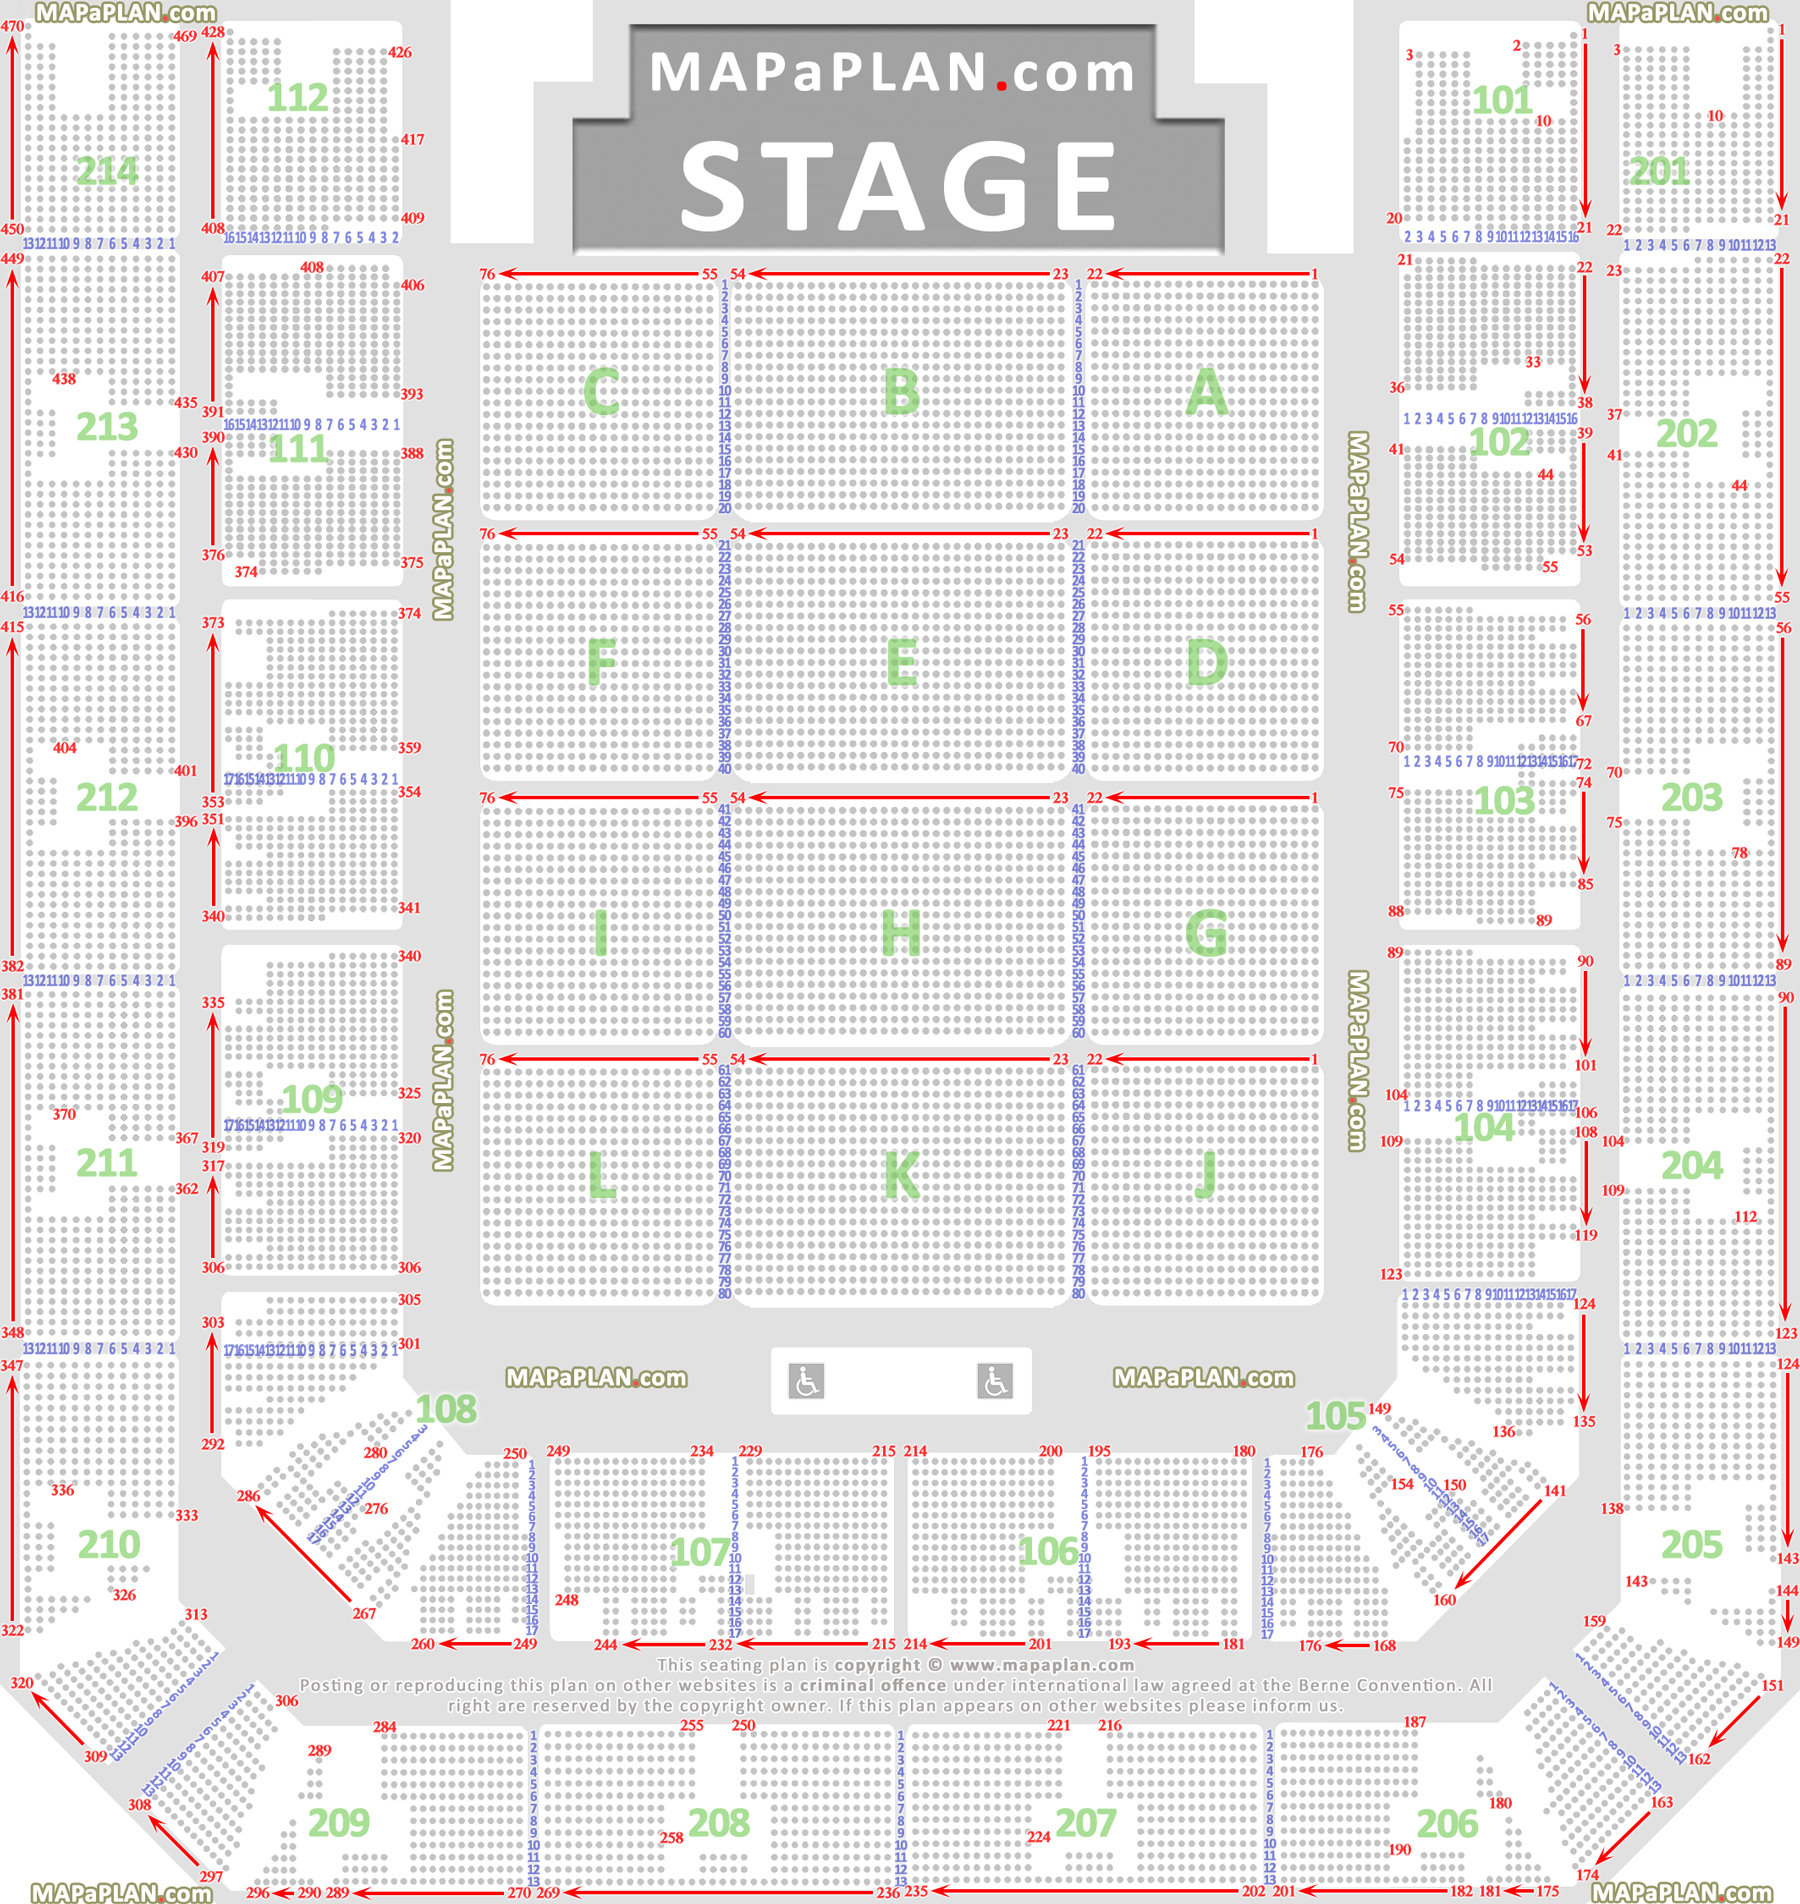 detailed seat numbers layout zitplaatsen geplaceerd stoelnummers rijen vakken nummers eerste tweede ring sectie zaal plattegrond Amsterdam Ziggo Dome Arena seating plan